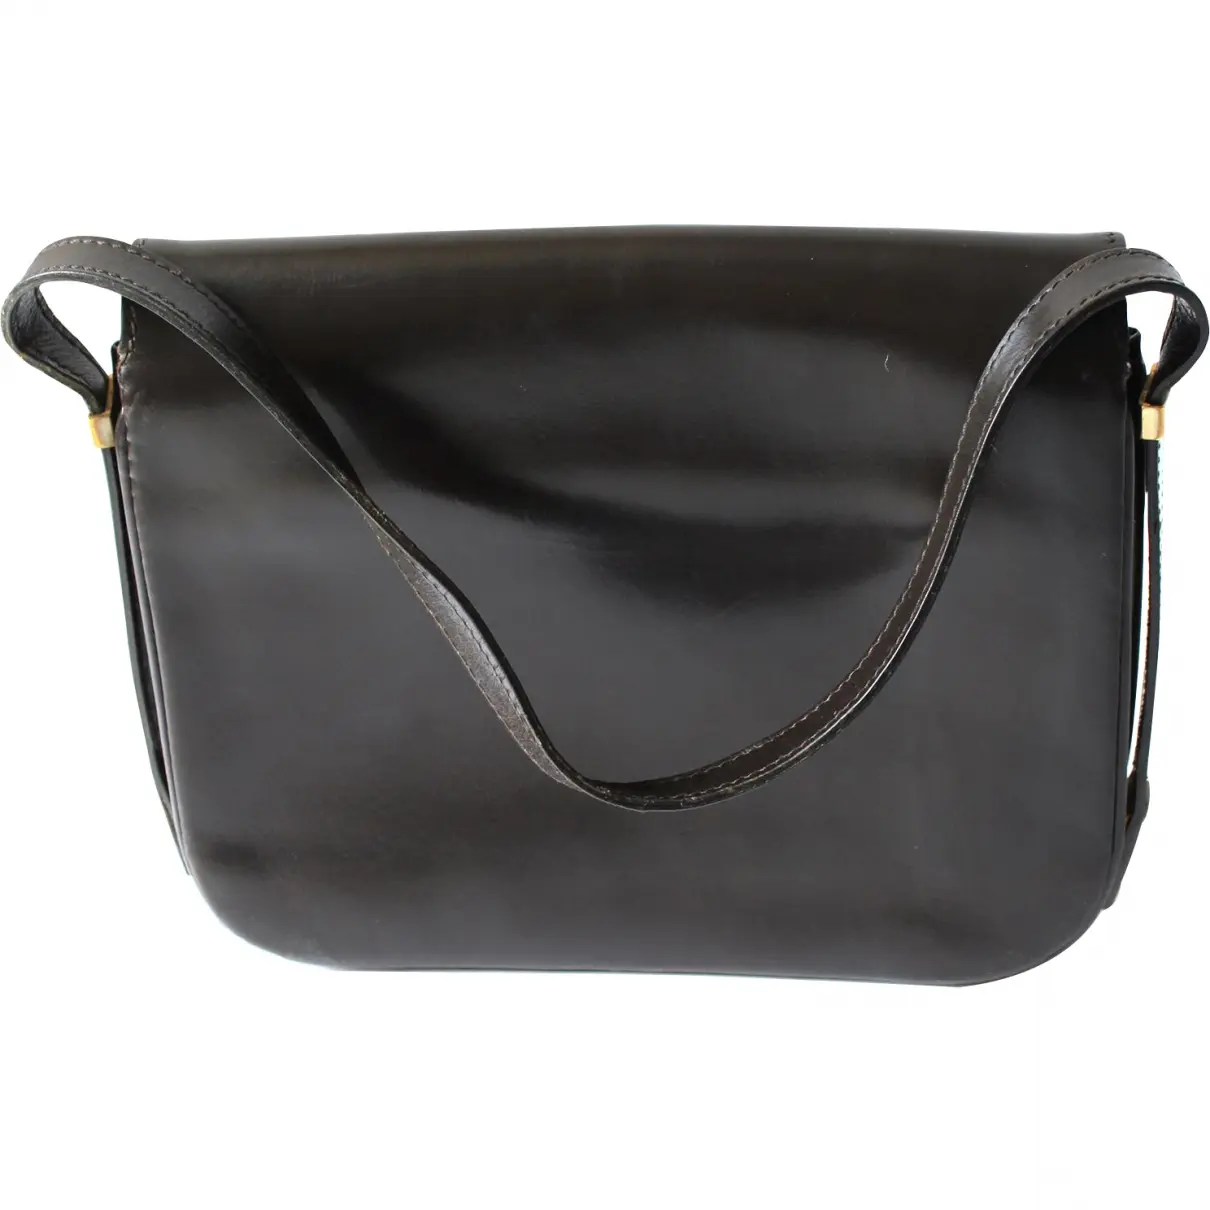 Luxury Morabito Handbags Women - Vintage